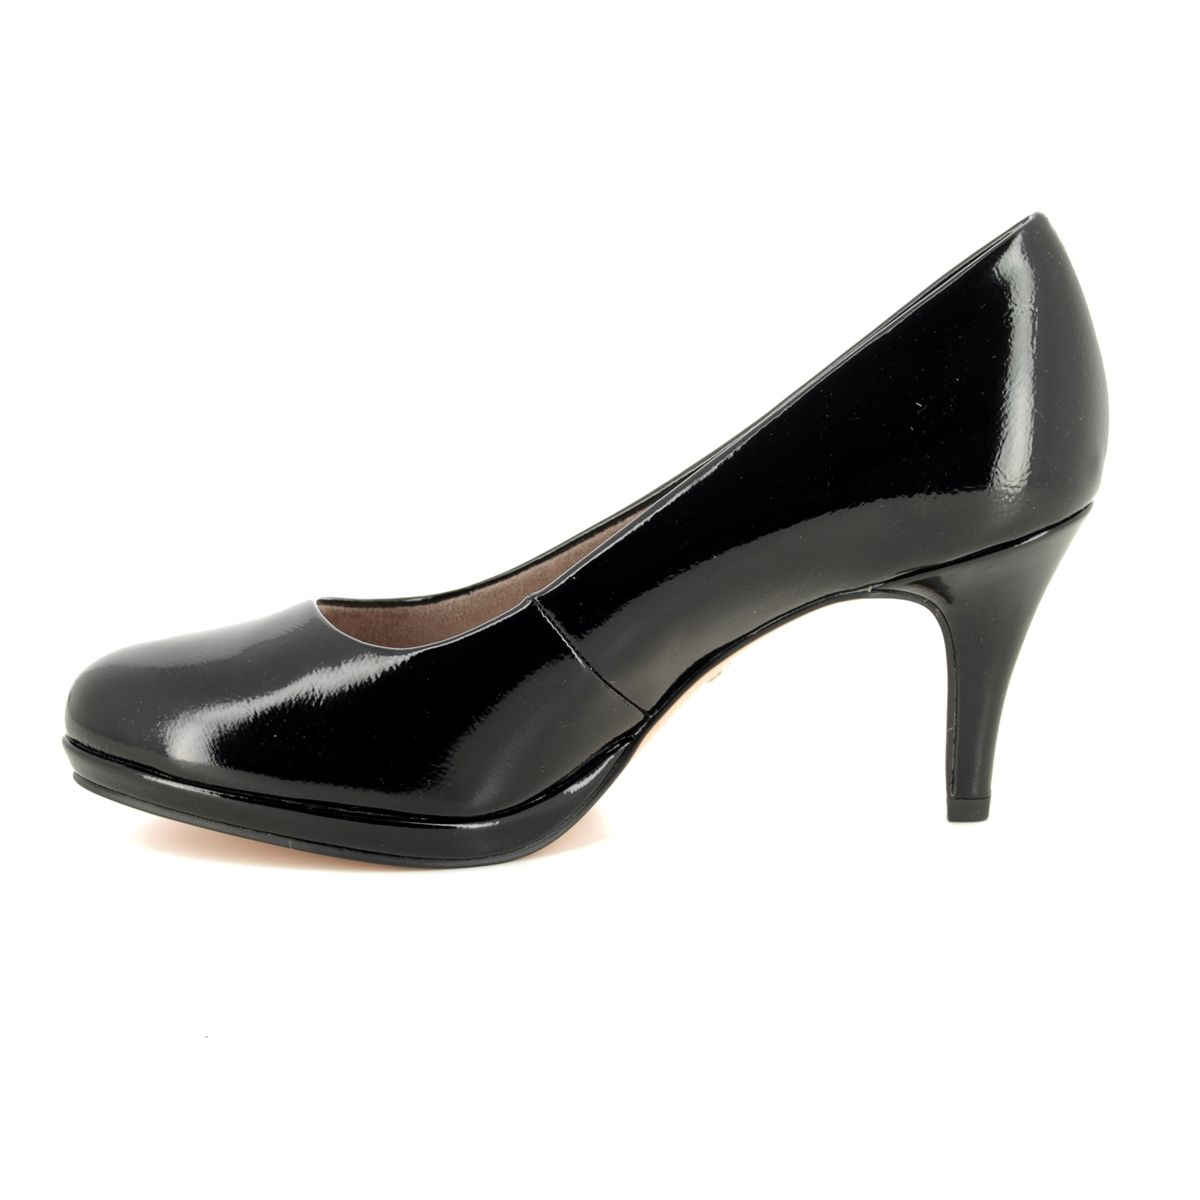 Tamaris Jessa patent heels